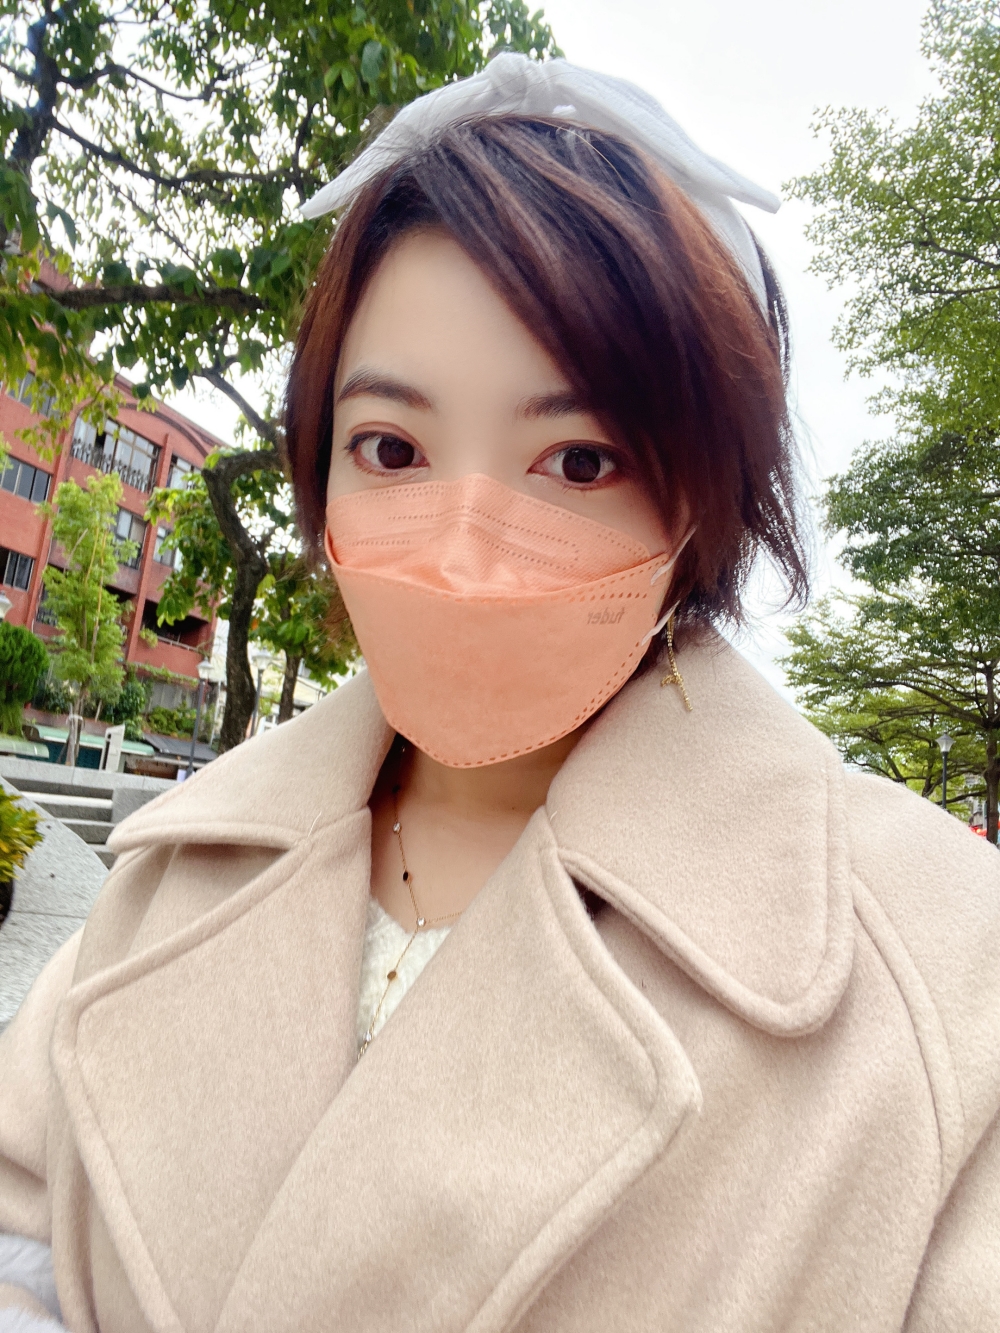 福德好罩韓式4D立體魚型口罩 蜜糖奶茶 粉橘色魚型口罩實戴